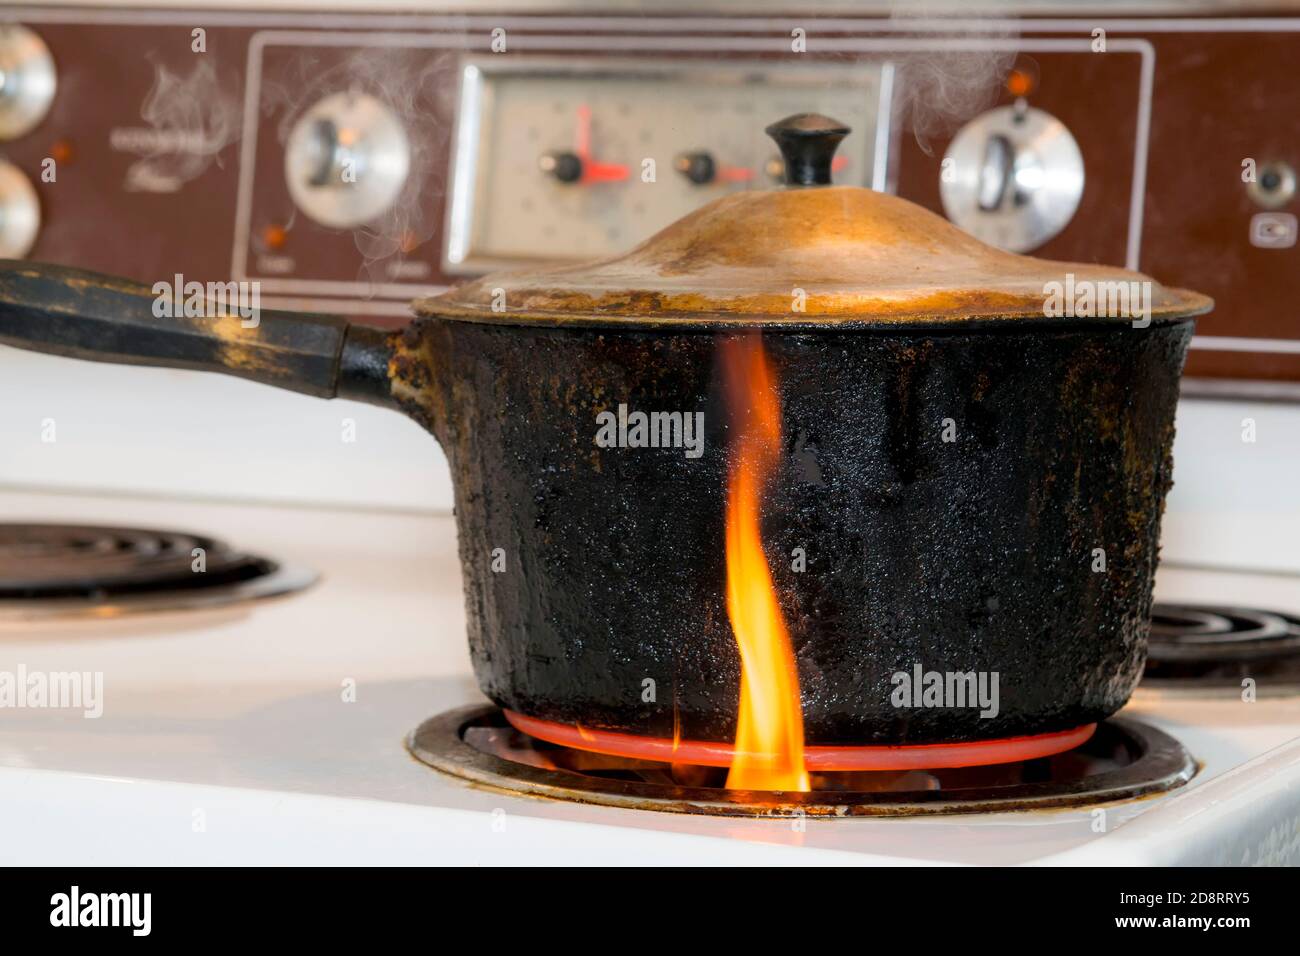 Une vieille casserole couverte, charrée, noircie brûlante sur un brûleur sur une cuisinière électrique. La petite flamme se trouve à l'extérieur du pot sortant du brûleur. Banque D'Images